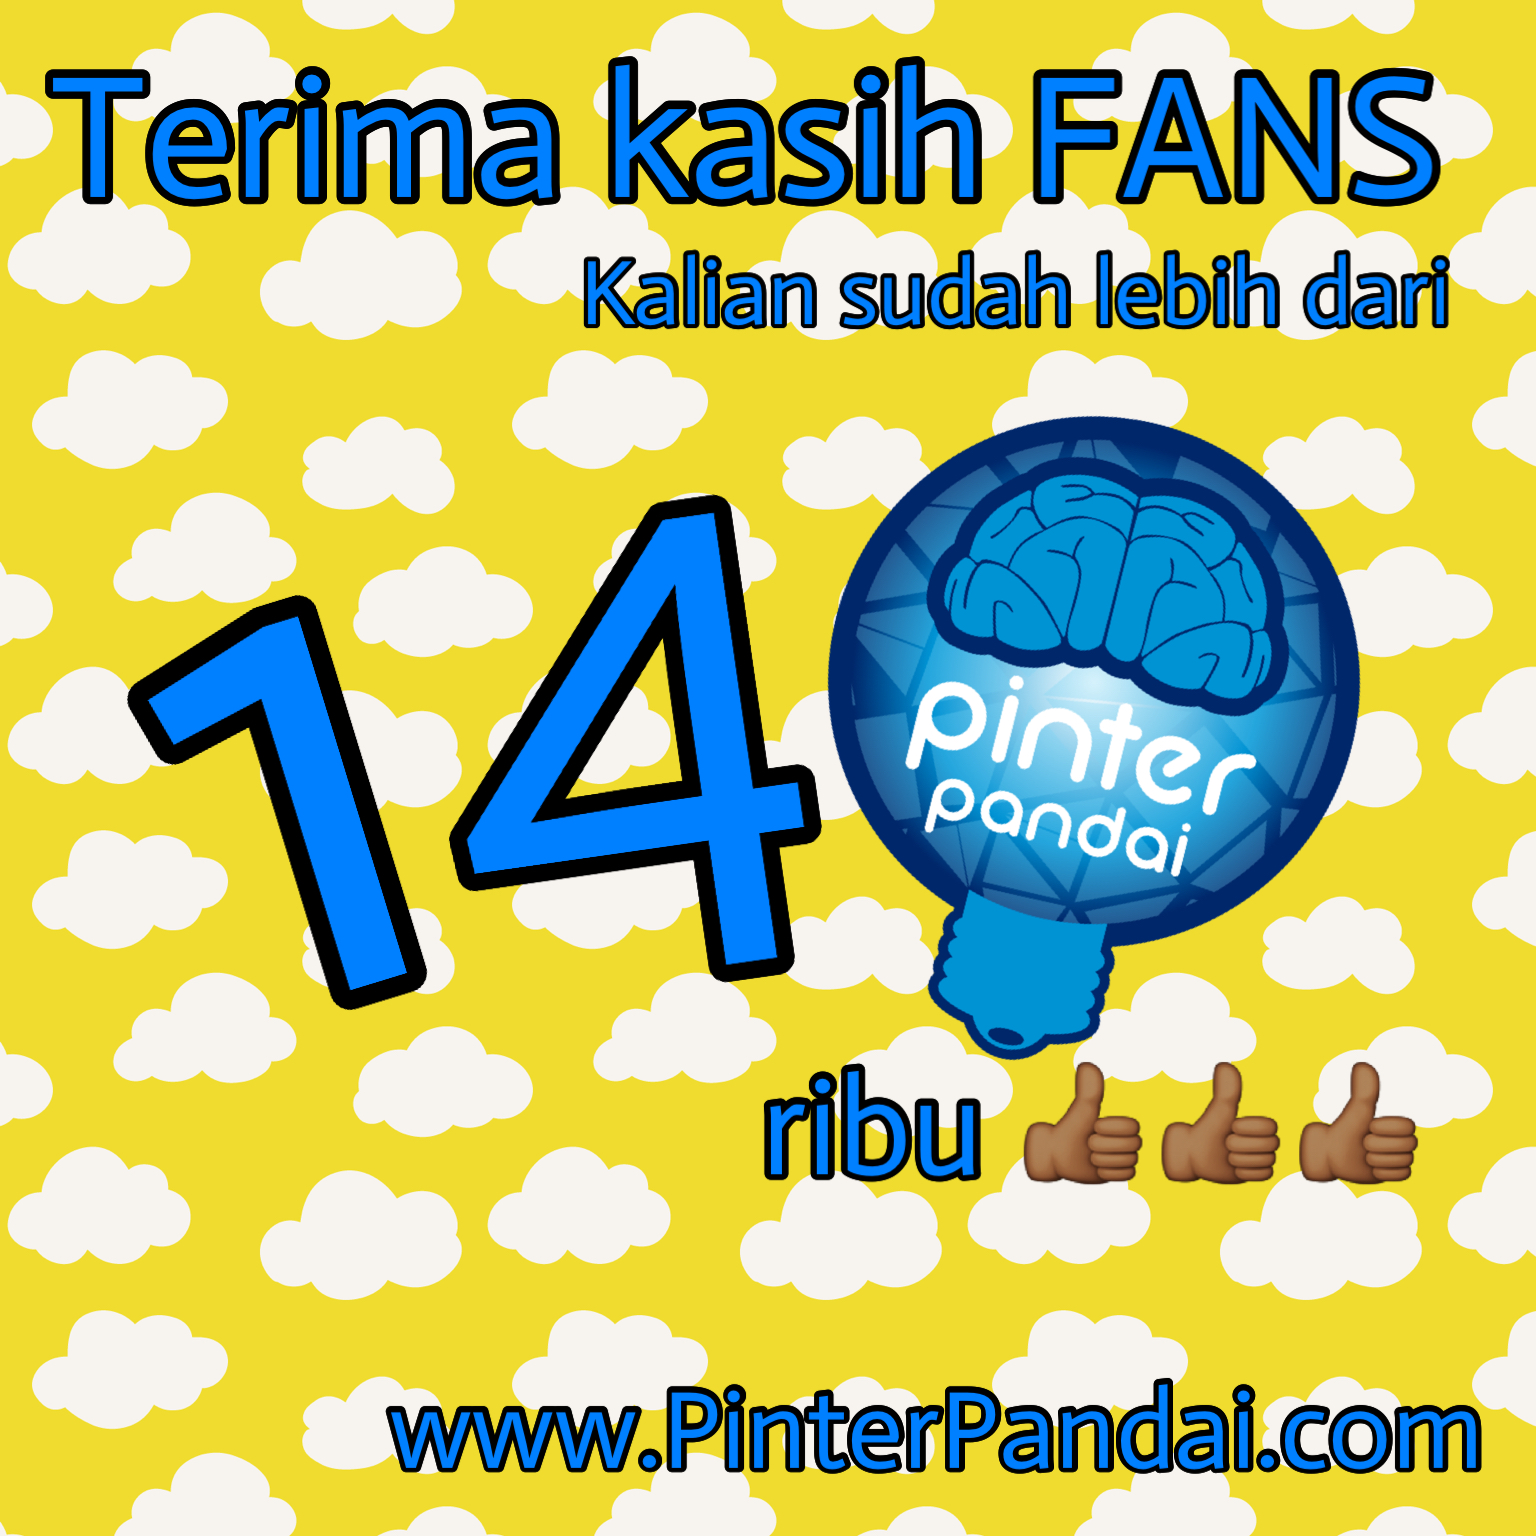 140 ribu fans PinterPandai.JPG